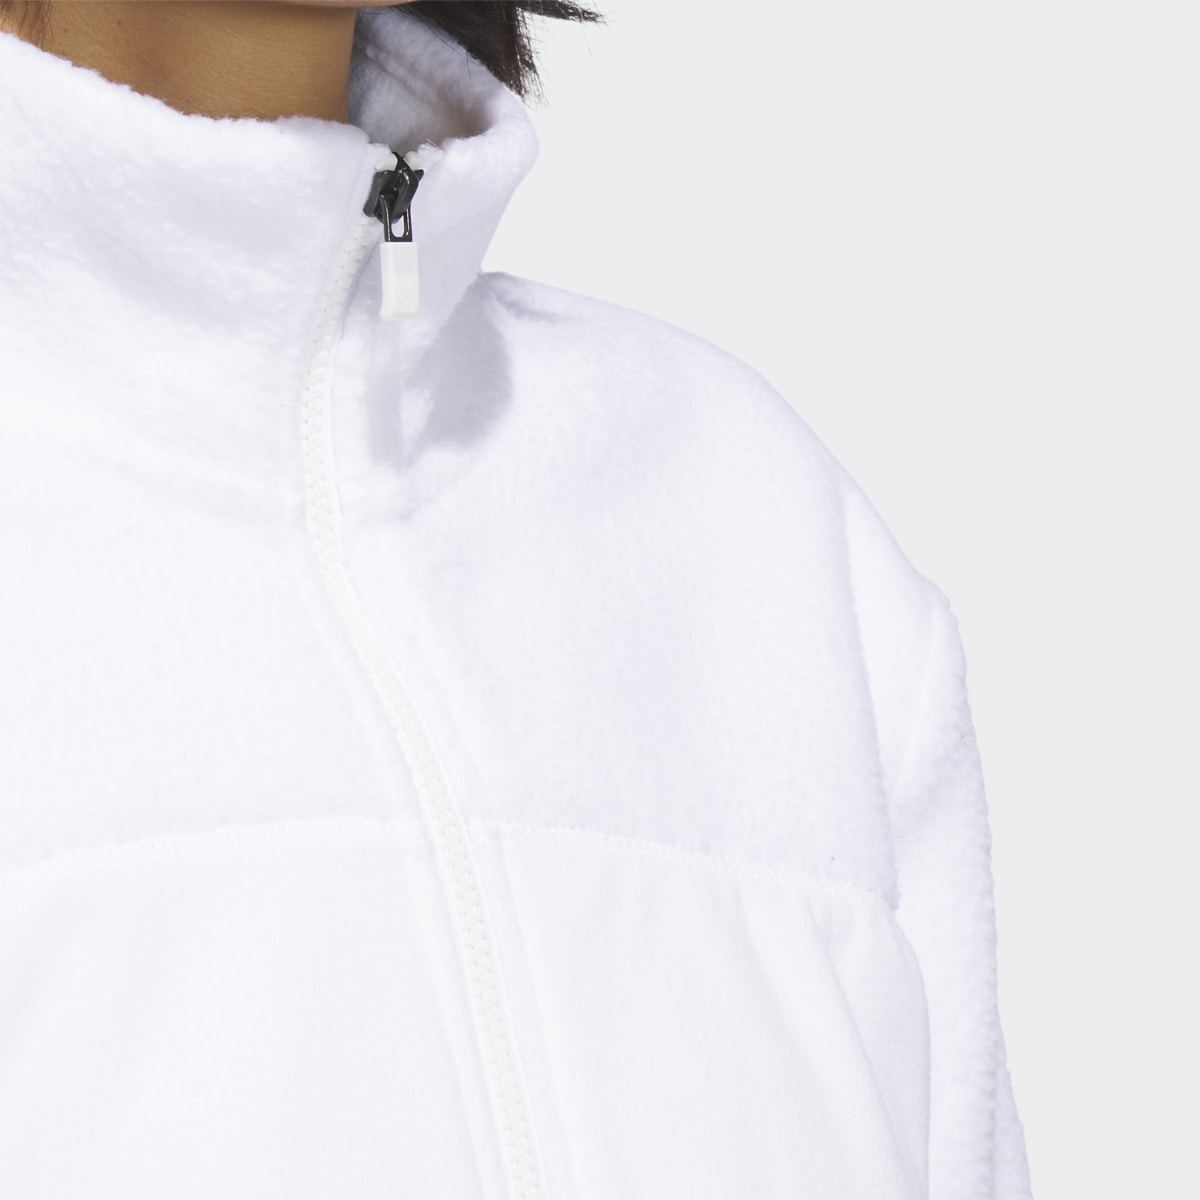 Adidas Full-Zip Fleece Jacket. 8